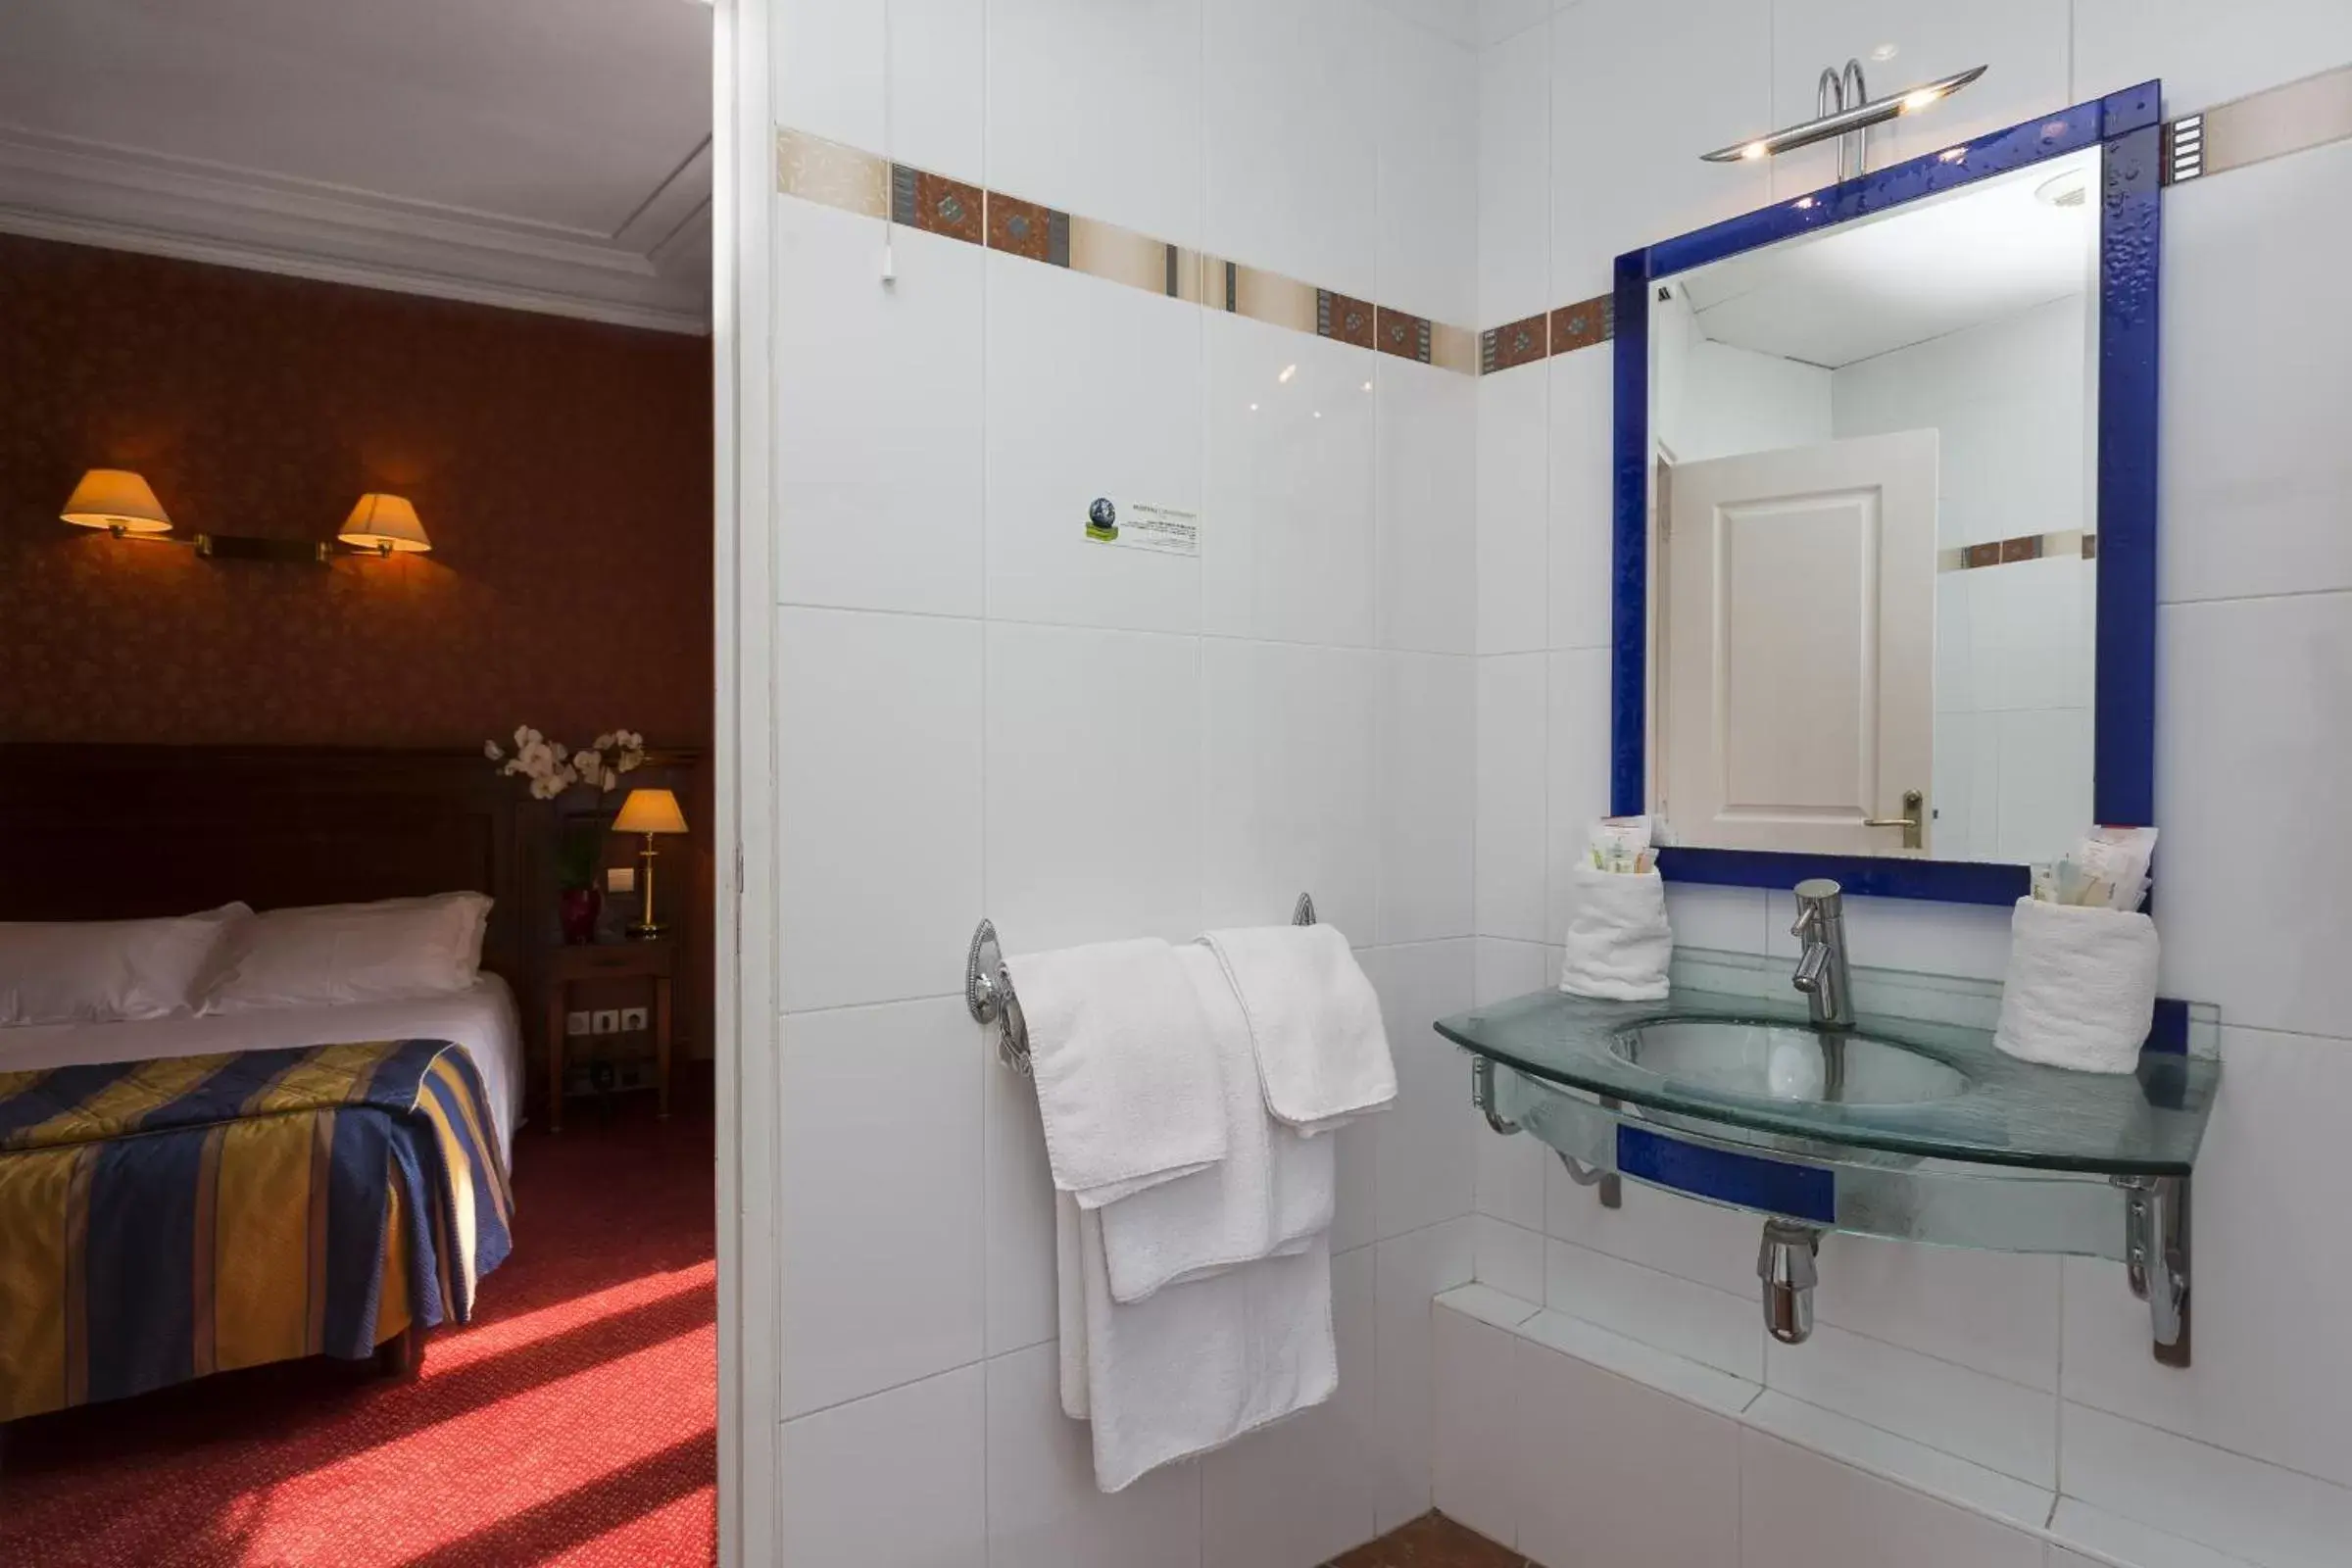 Bathroom in Hotel Viator - Gare de Lyon